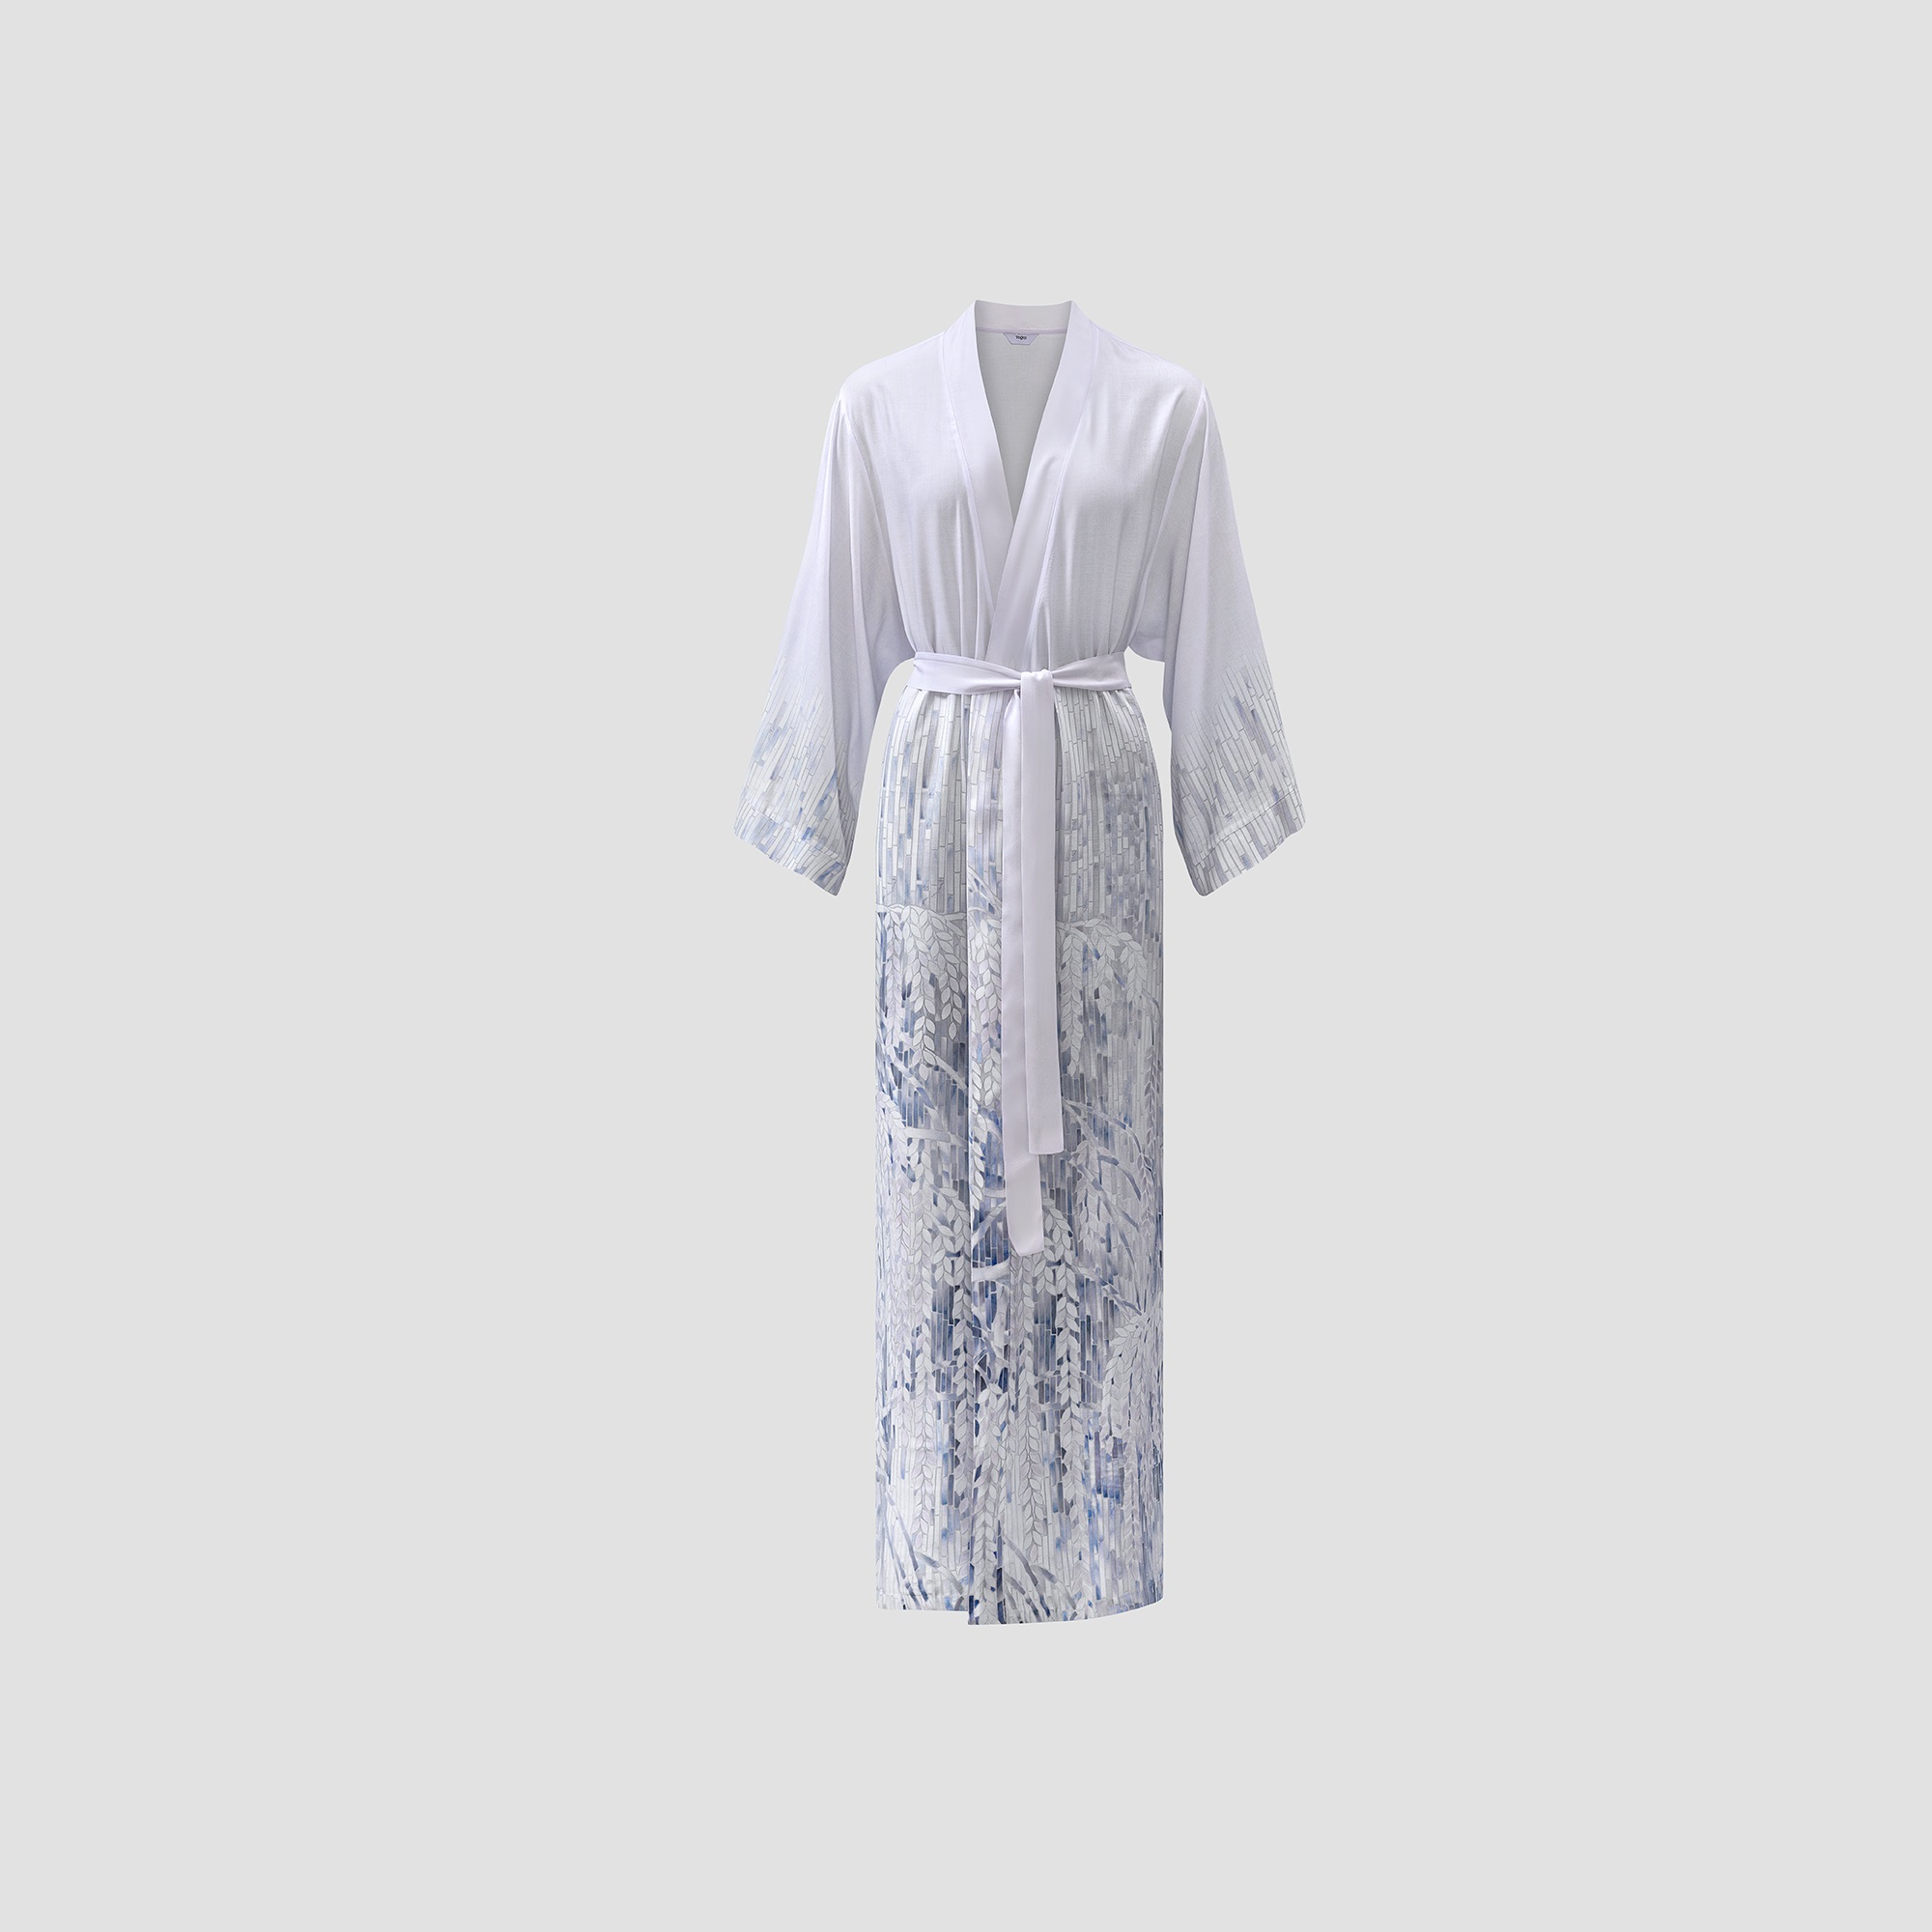 Кимоно Togas Вилонна бело-синее XL(50) платье кимоно